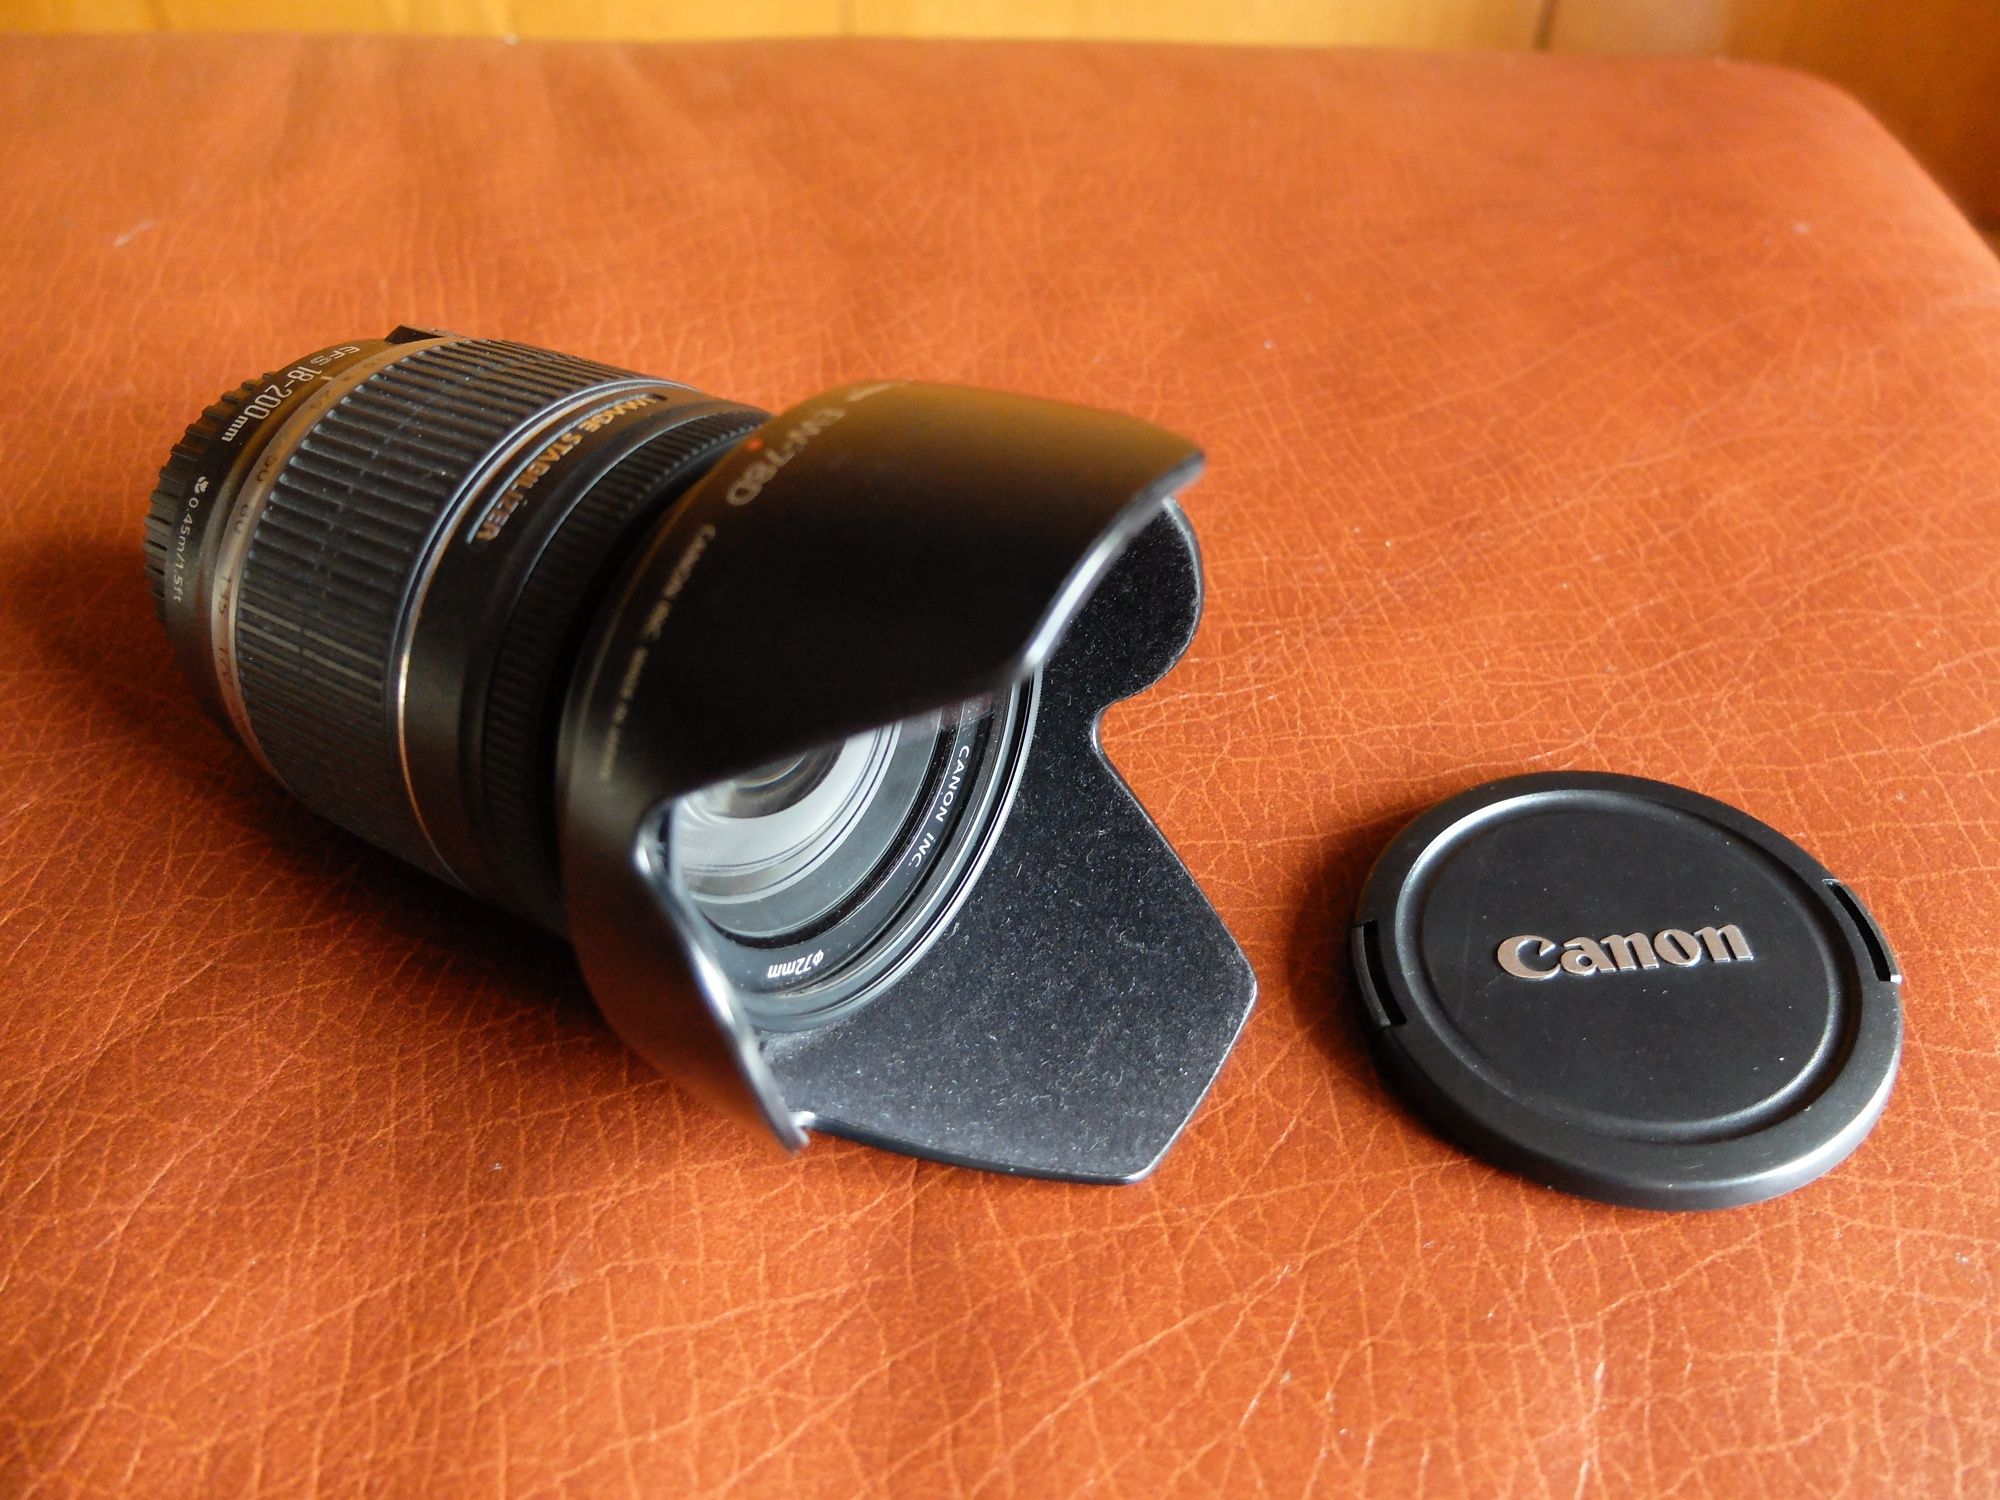 Canon 600D + Canon 18-200mm + canon 50mm + acessórios